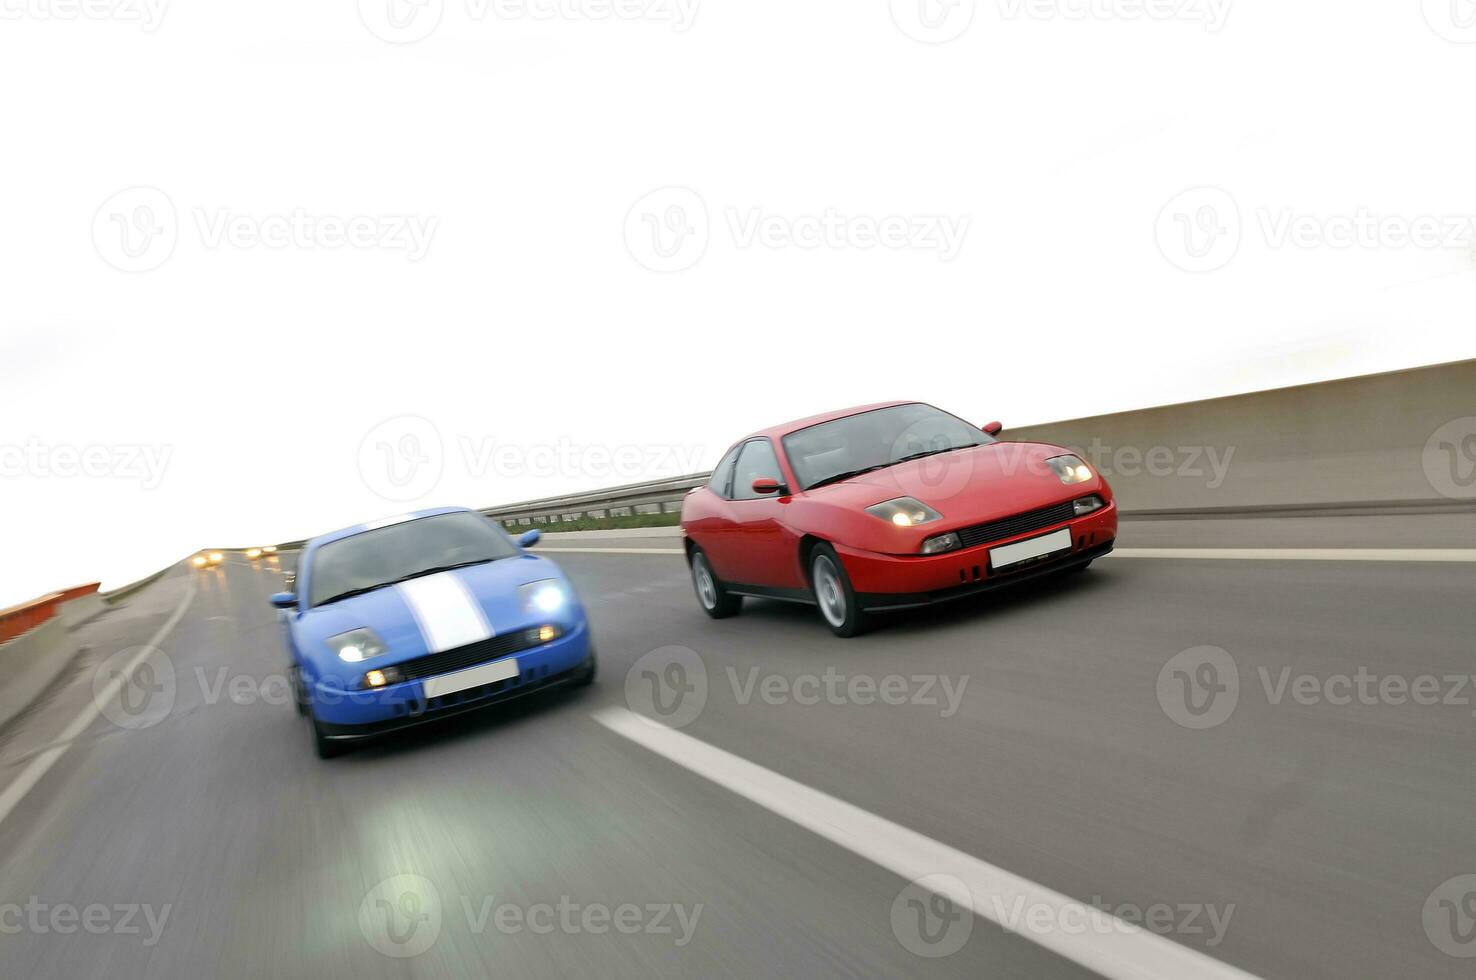 isolerat inställning bilar tävlings på motorväg foto